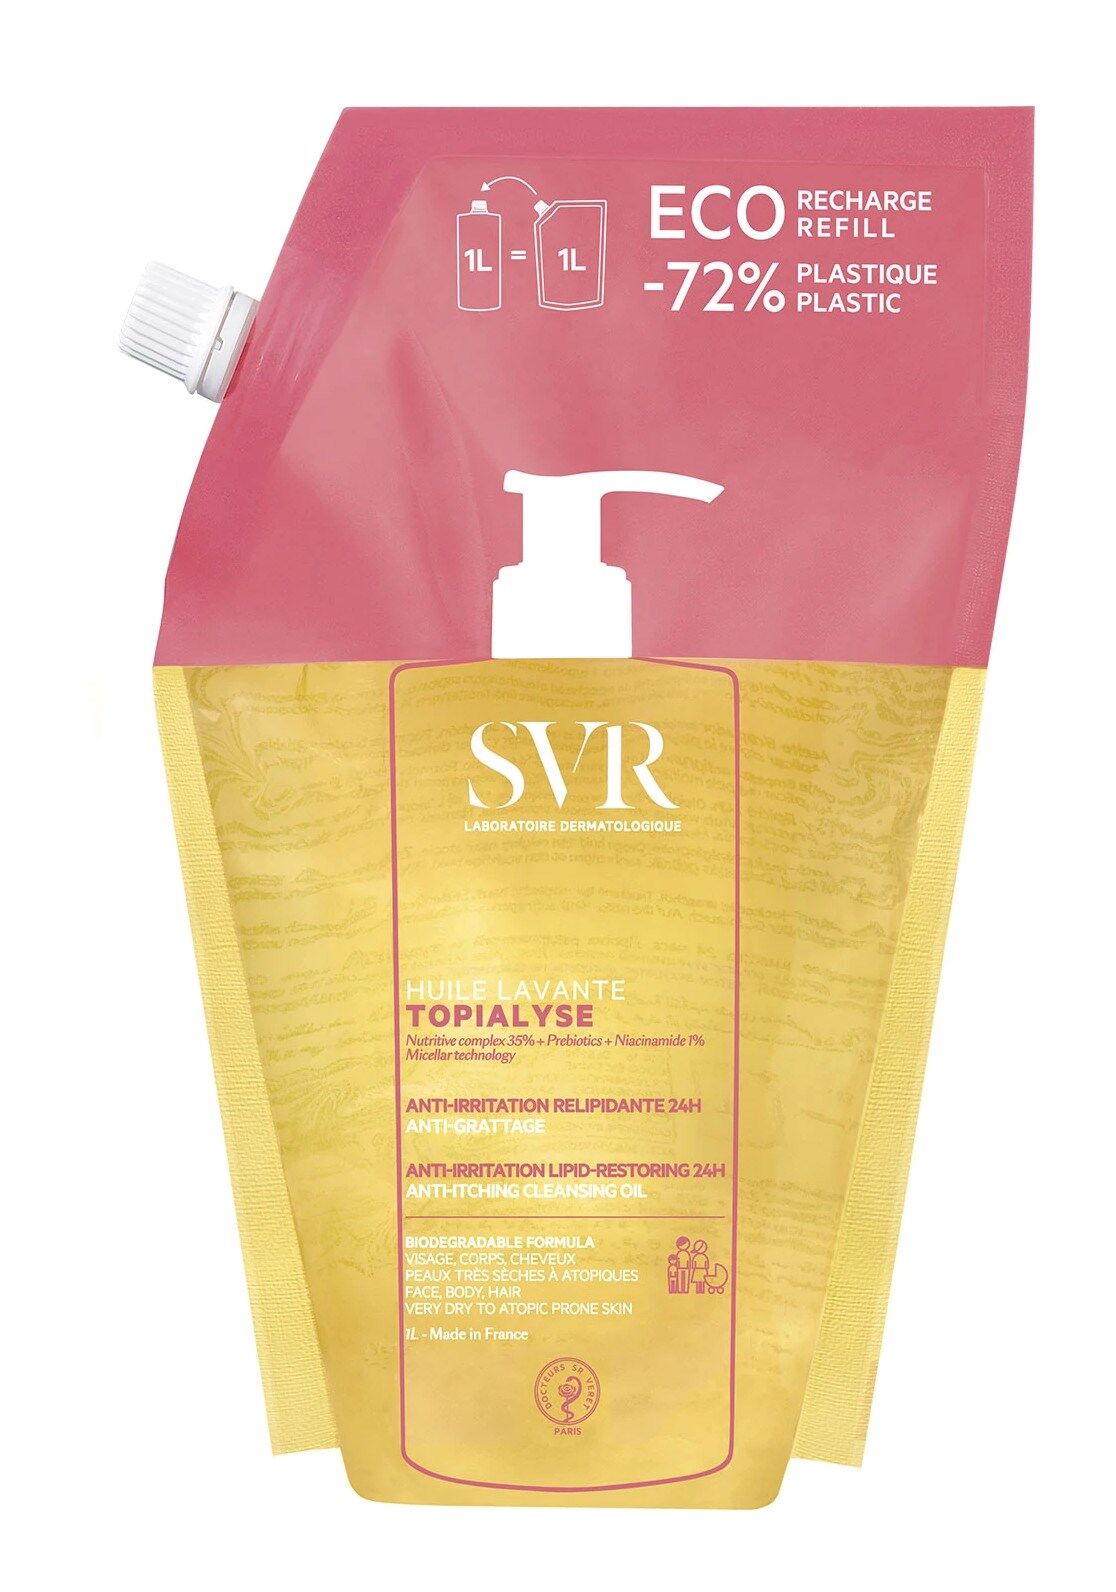 SVR Aceite micelar limpiador Topialyse para pieles secas y atópicas 1000mL refill